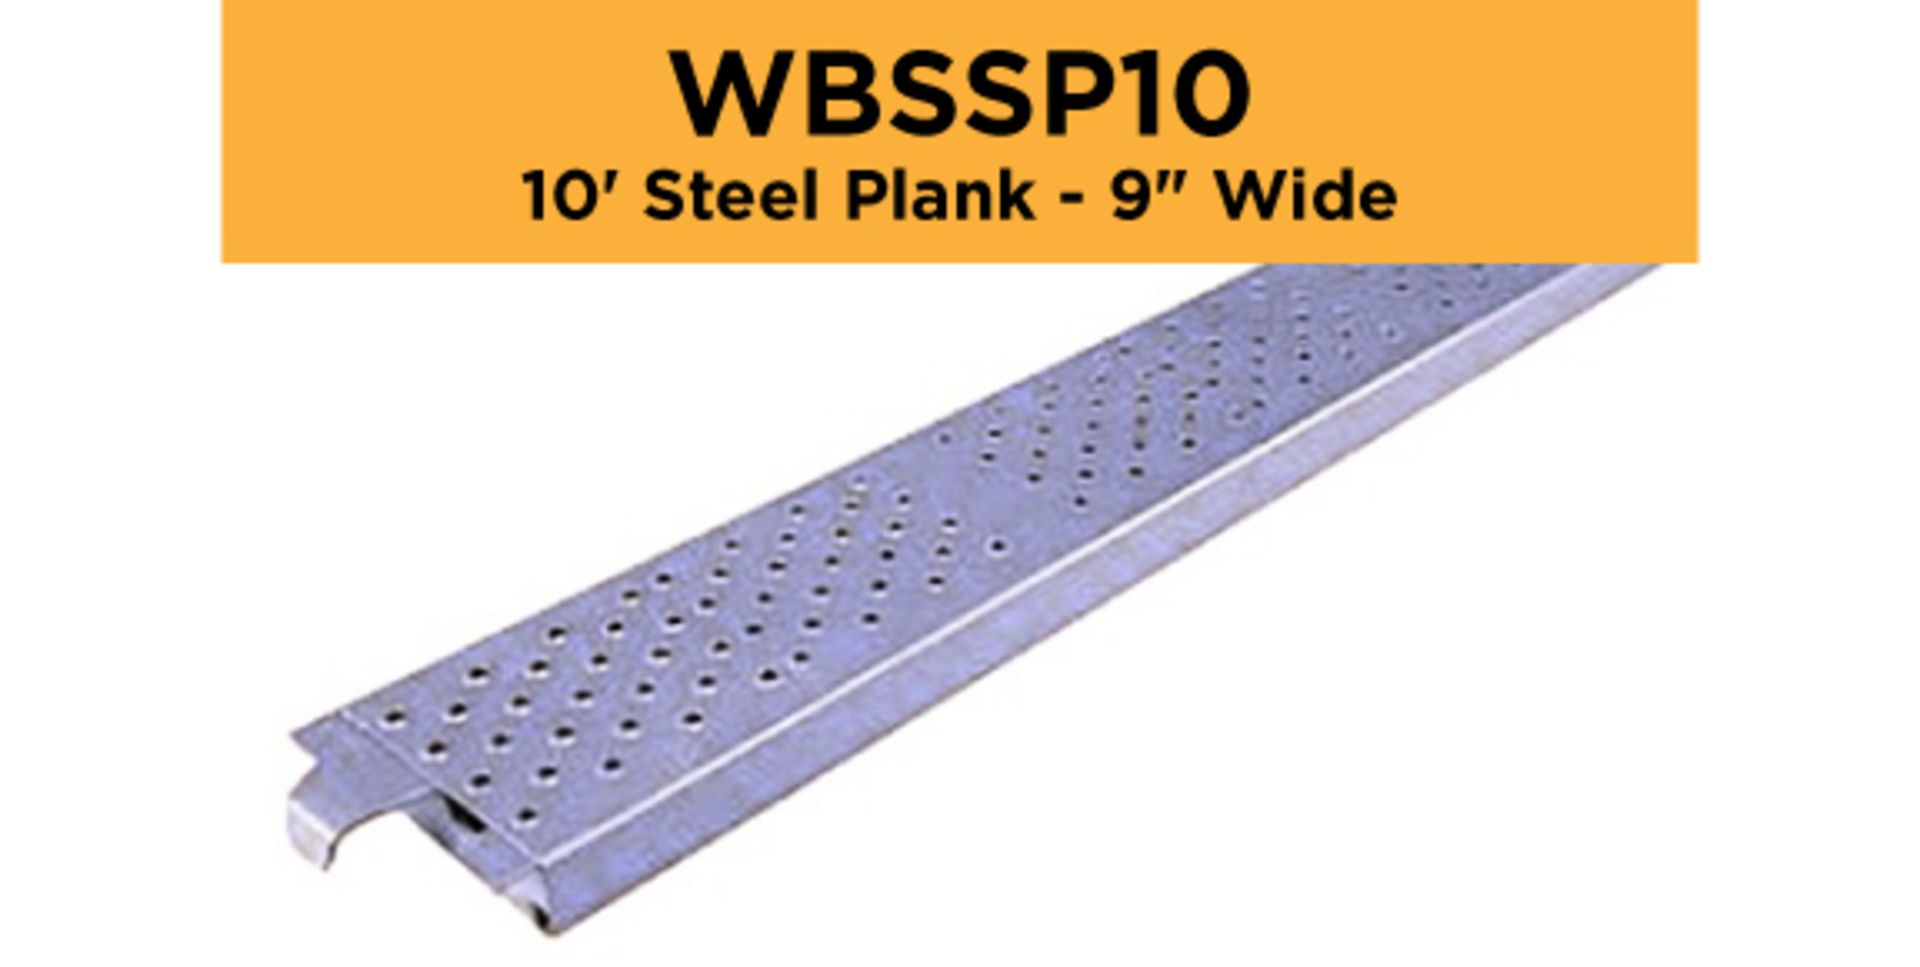 Lot of (192) 10' Steel Plank - 9" Wide - Bay Length 120" (3.05M); Type: WBSSP10 - (3) Racks Per